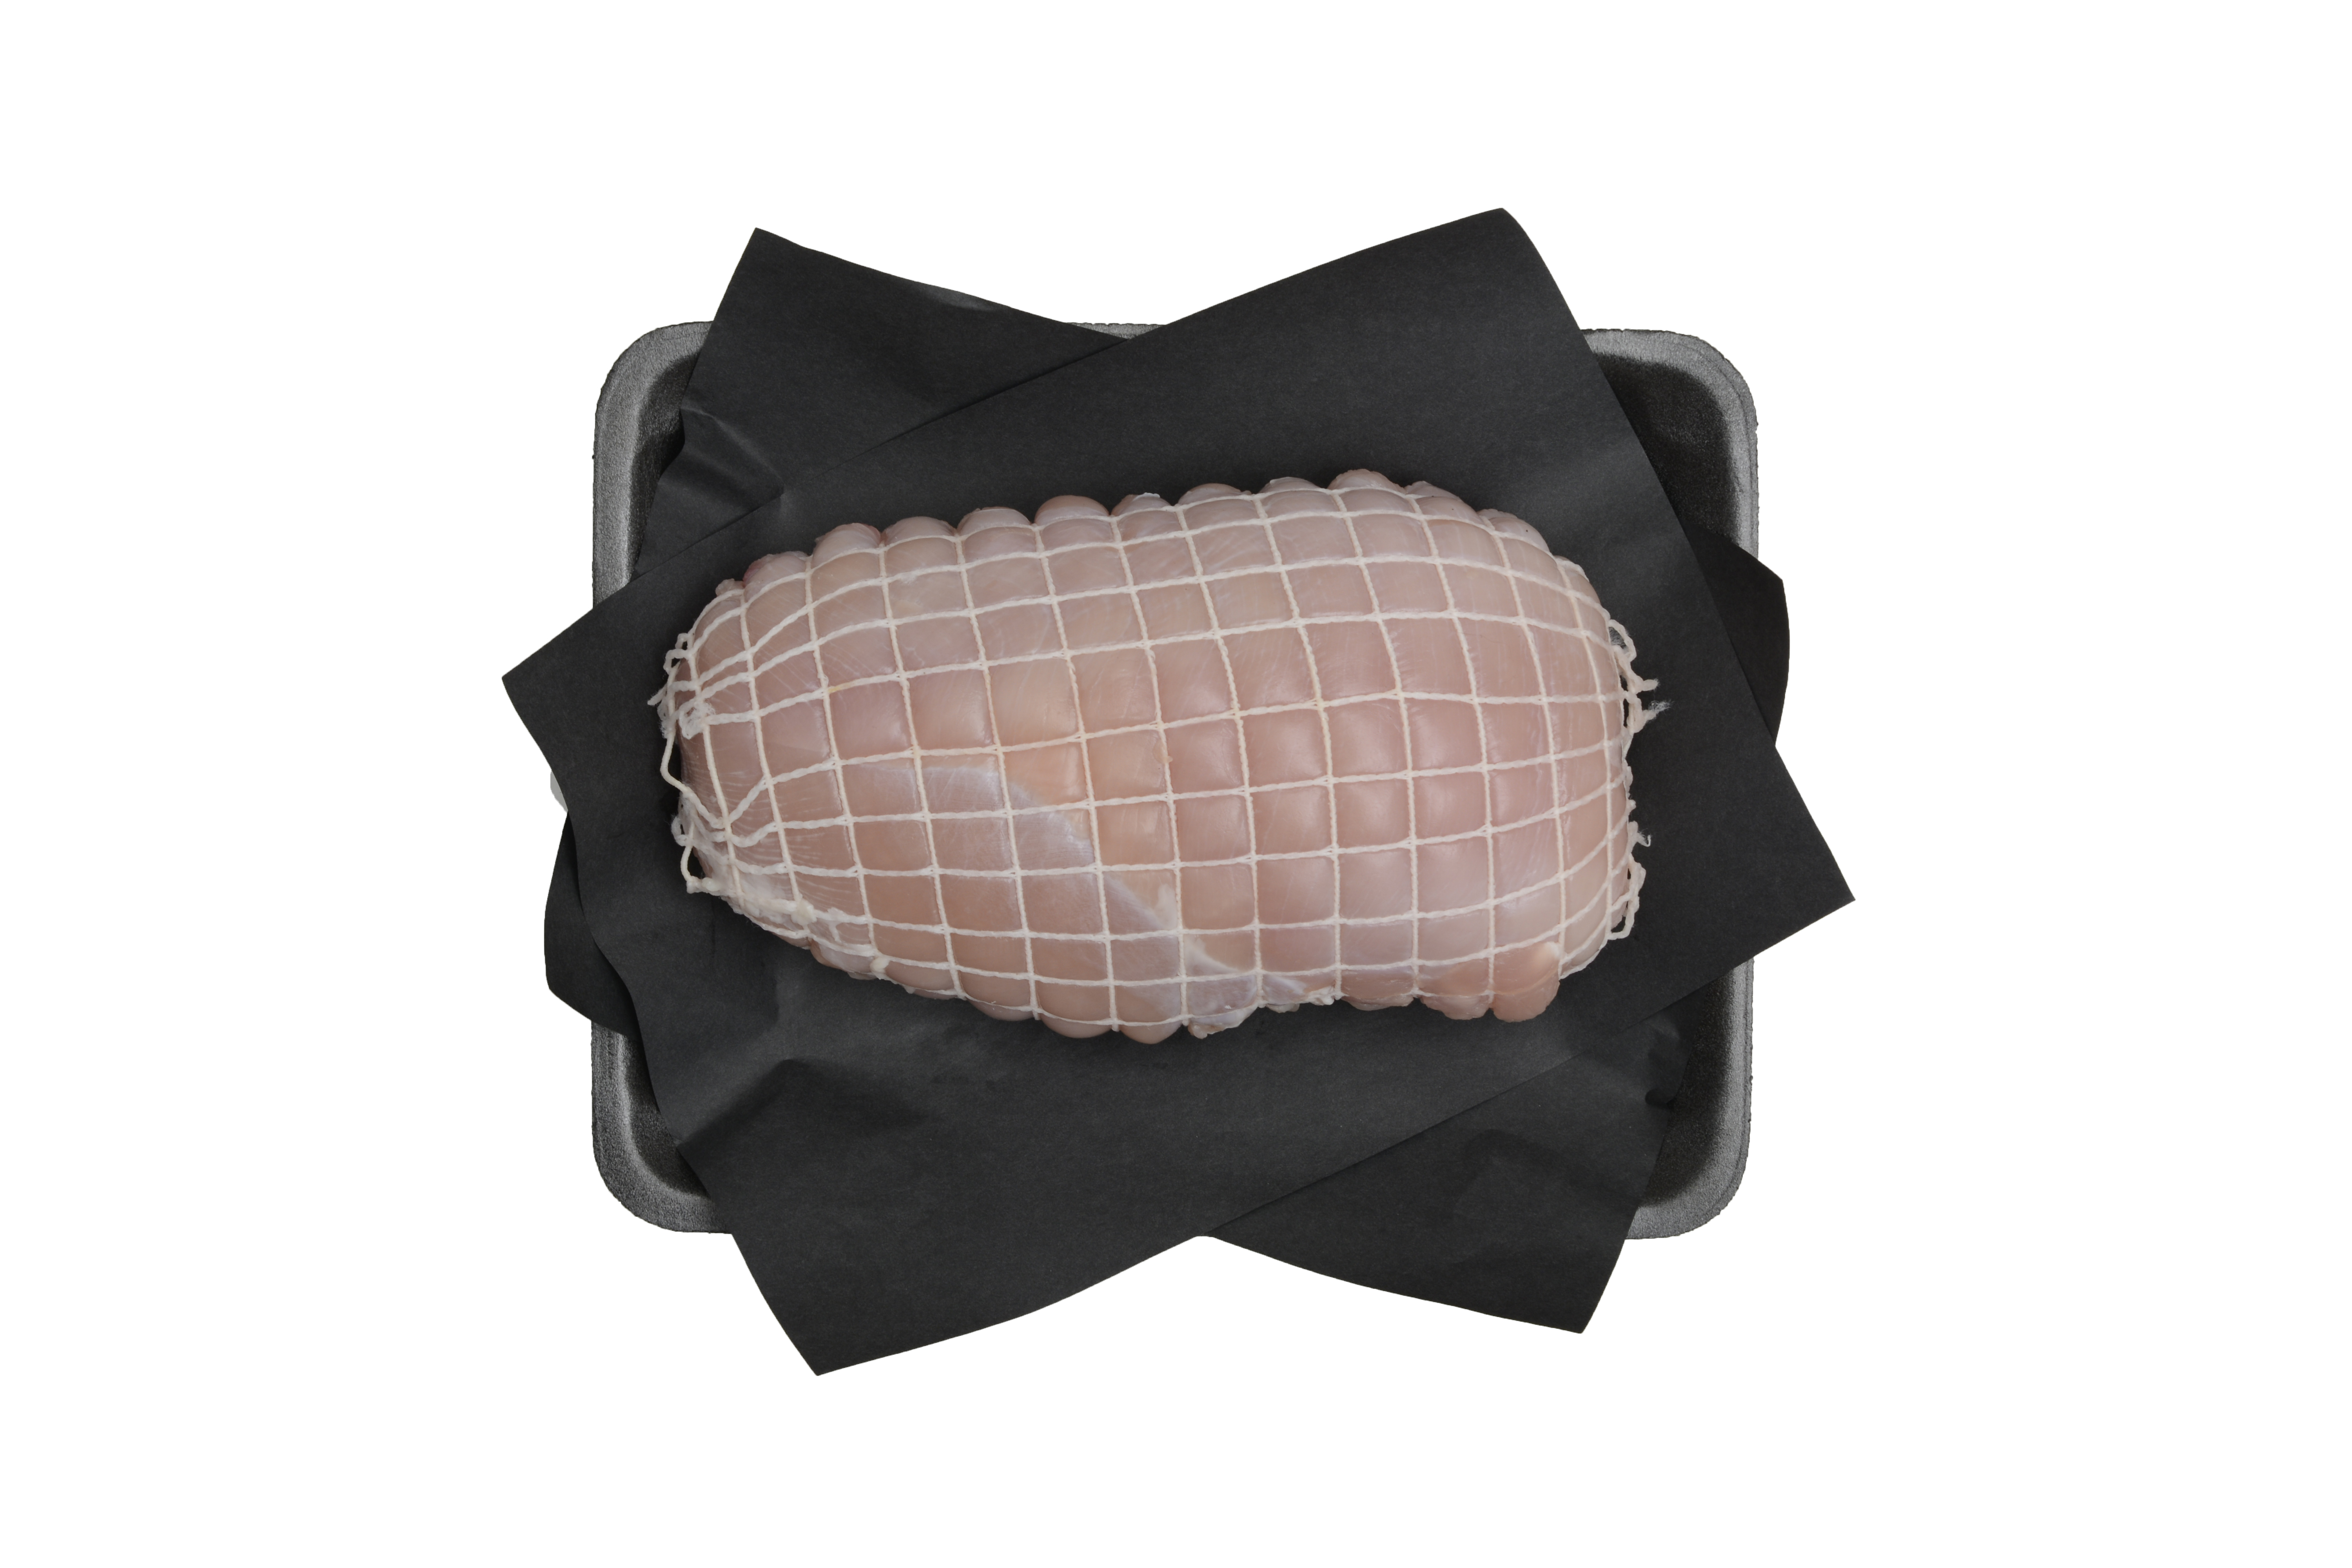 Turkey Breast Roast